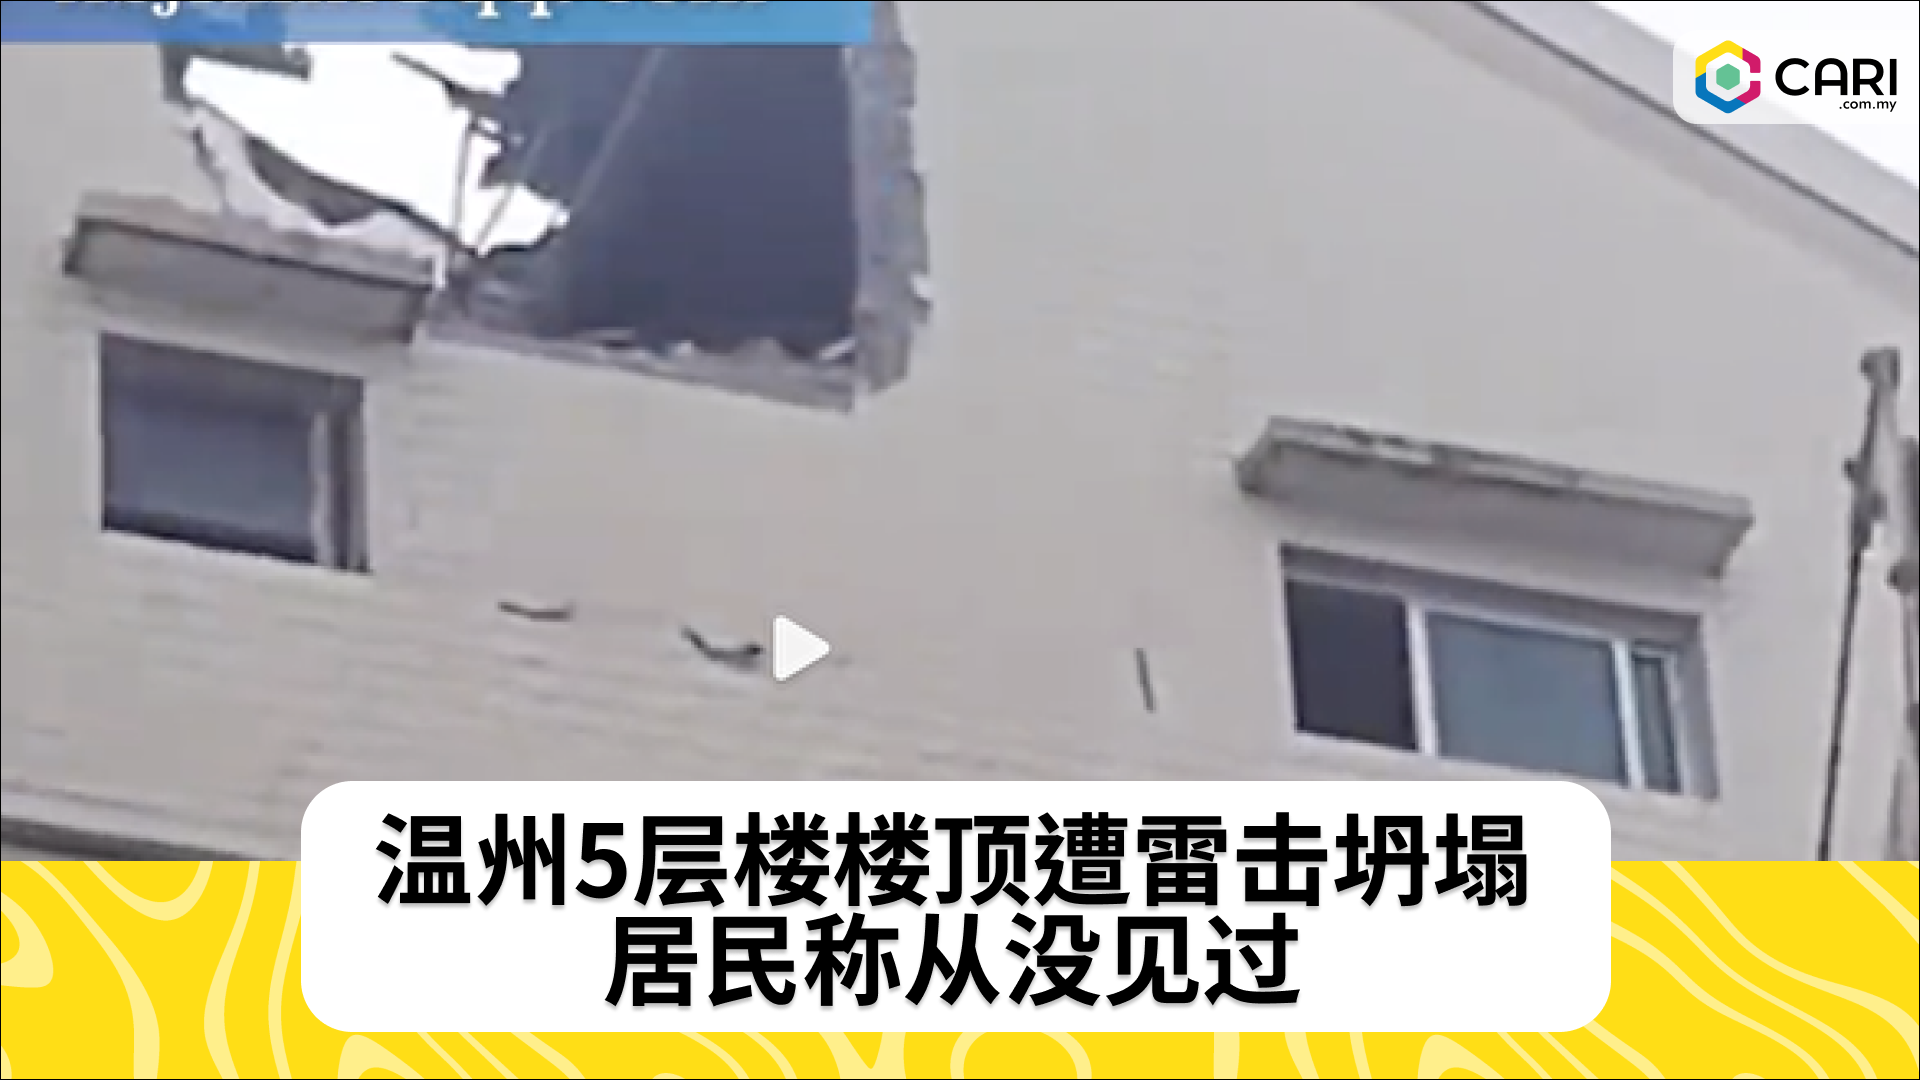 温州5层楼楼顶遭雷击坍塌 居民称从没见过